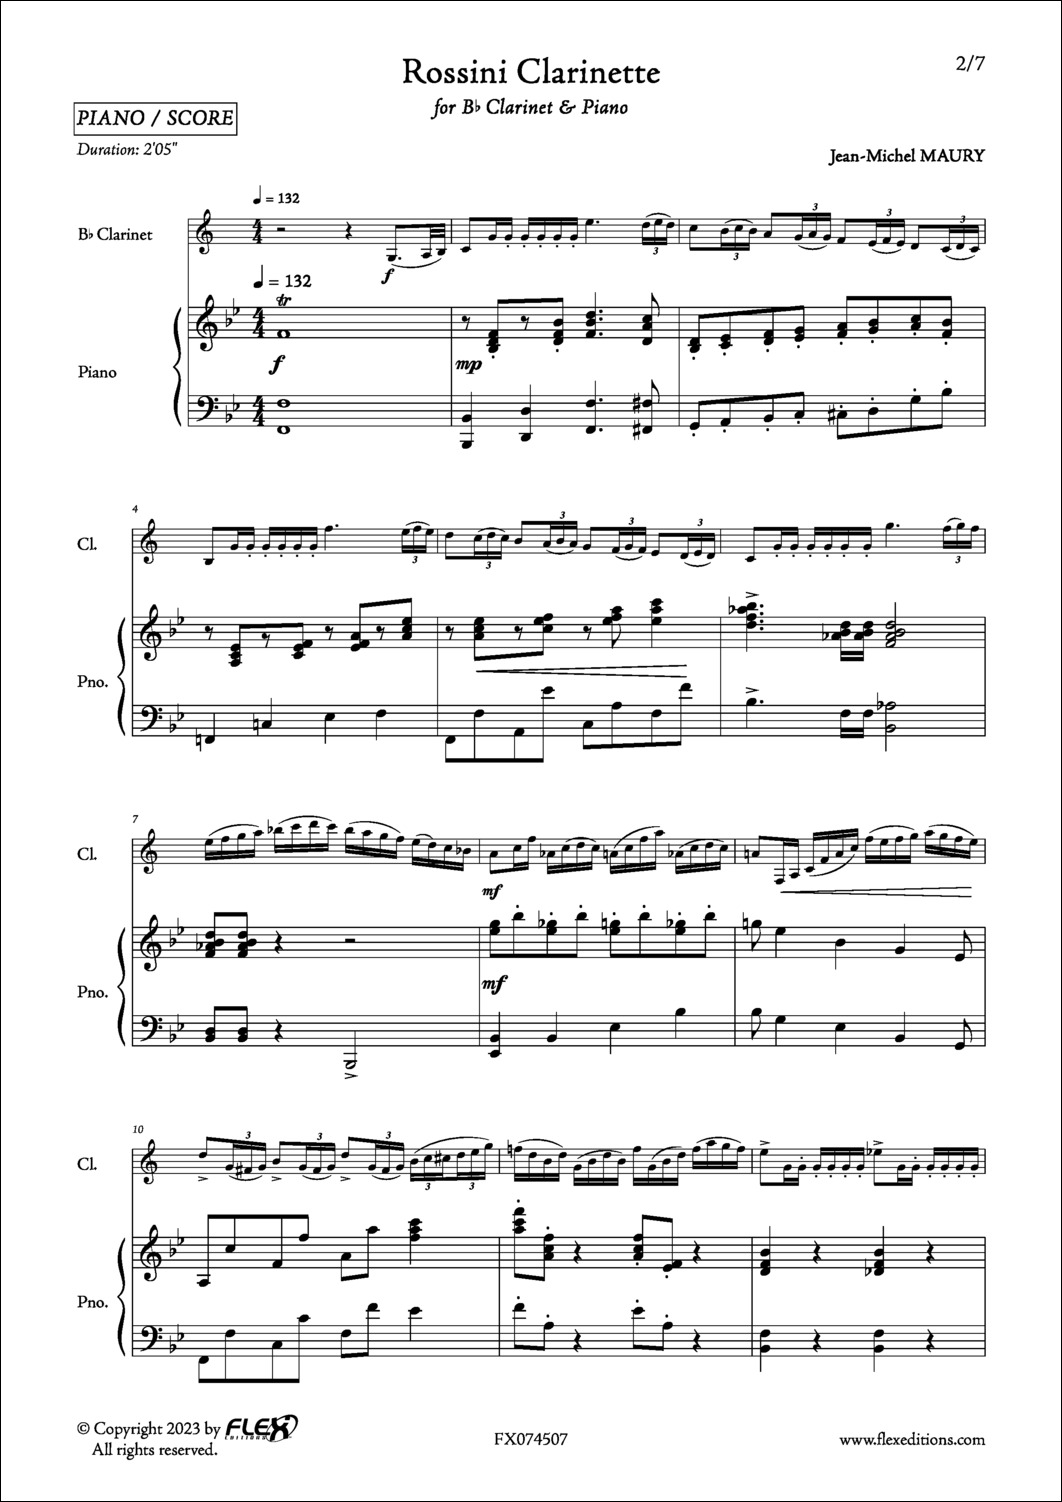 Rossini Clarinette - J.-M. MAURY - <font color=#666666>Clarinette et Piano</font>